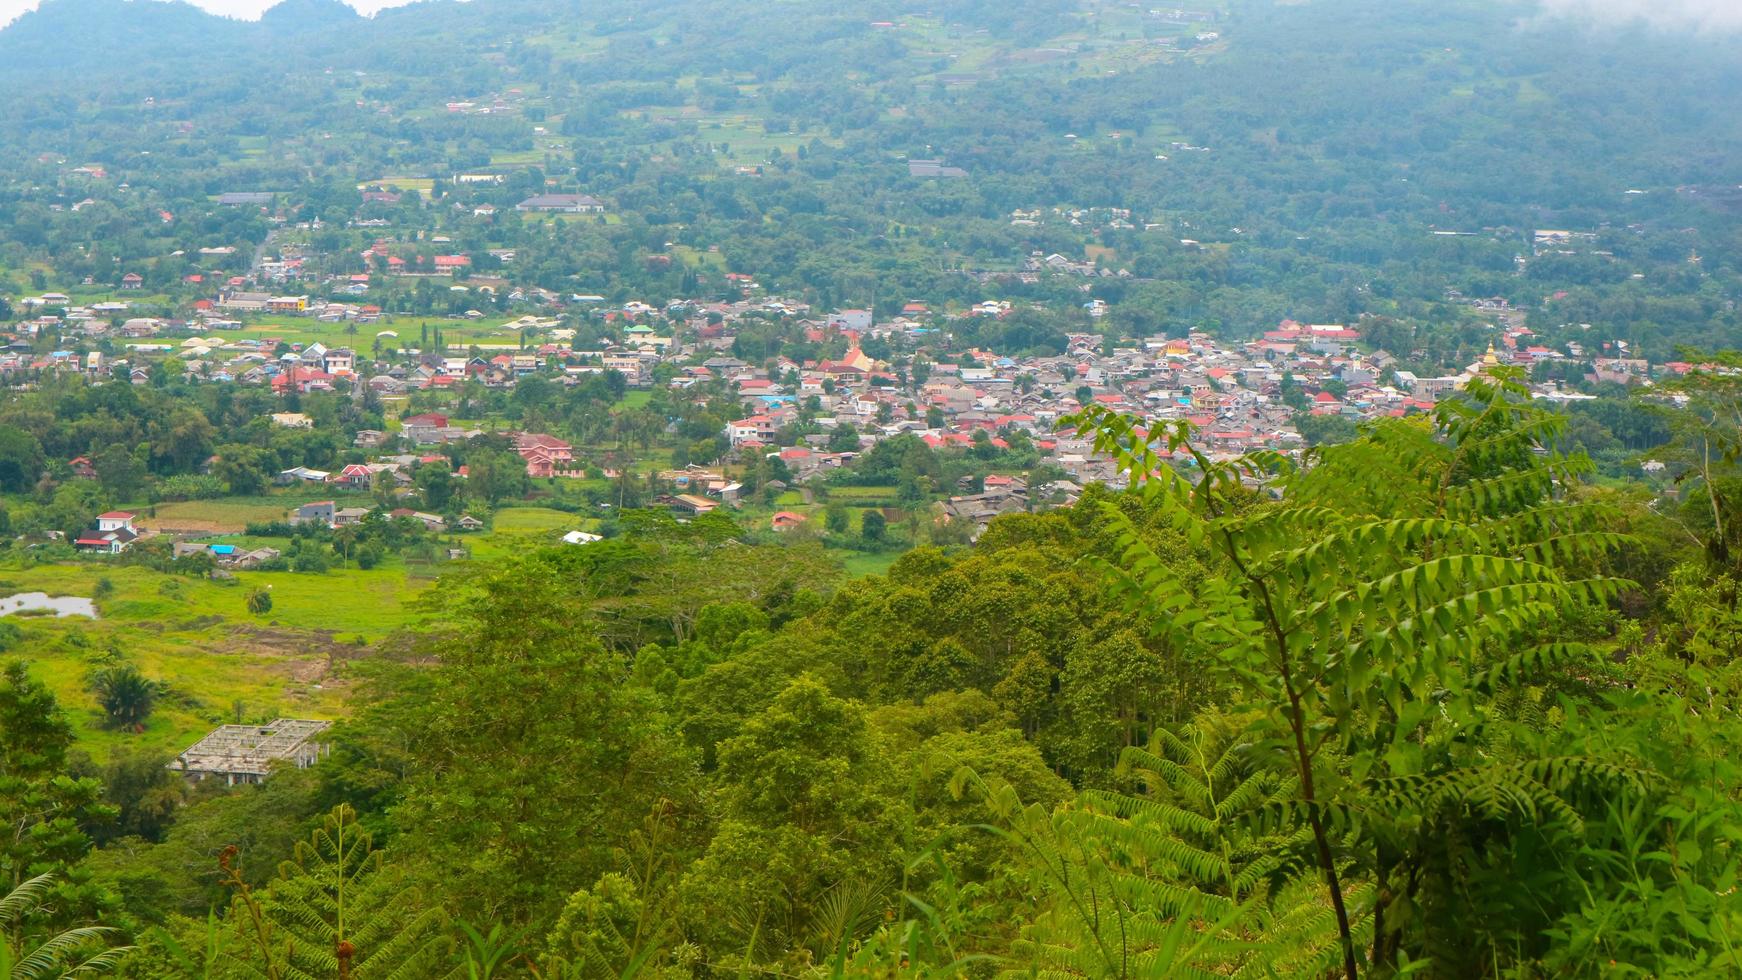 la vue sur le ciel nuageux, les arbres, les montagnes et les maisons a été photographiée au-dessus de la colline photo